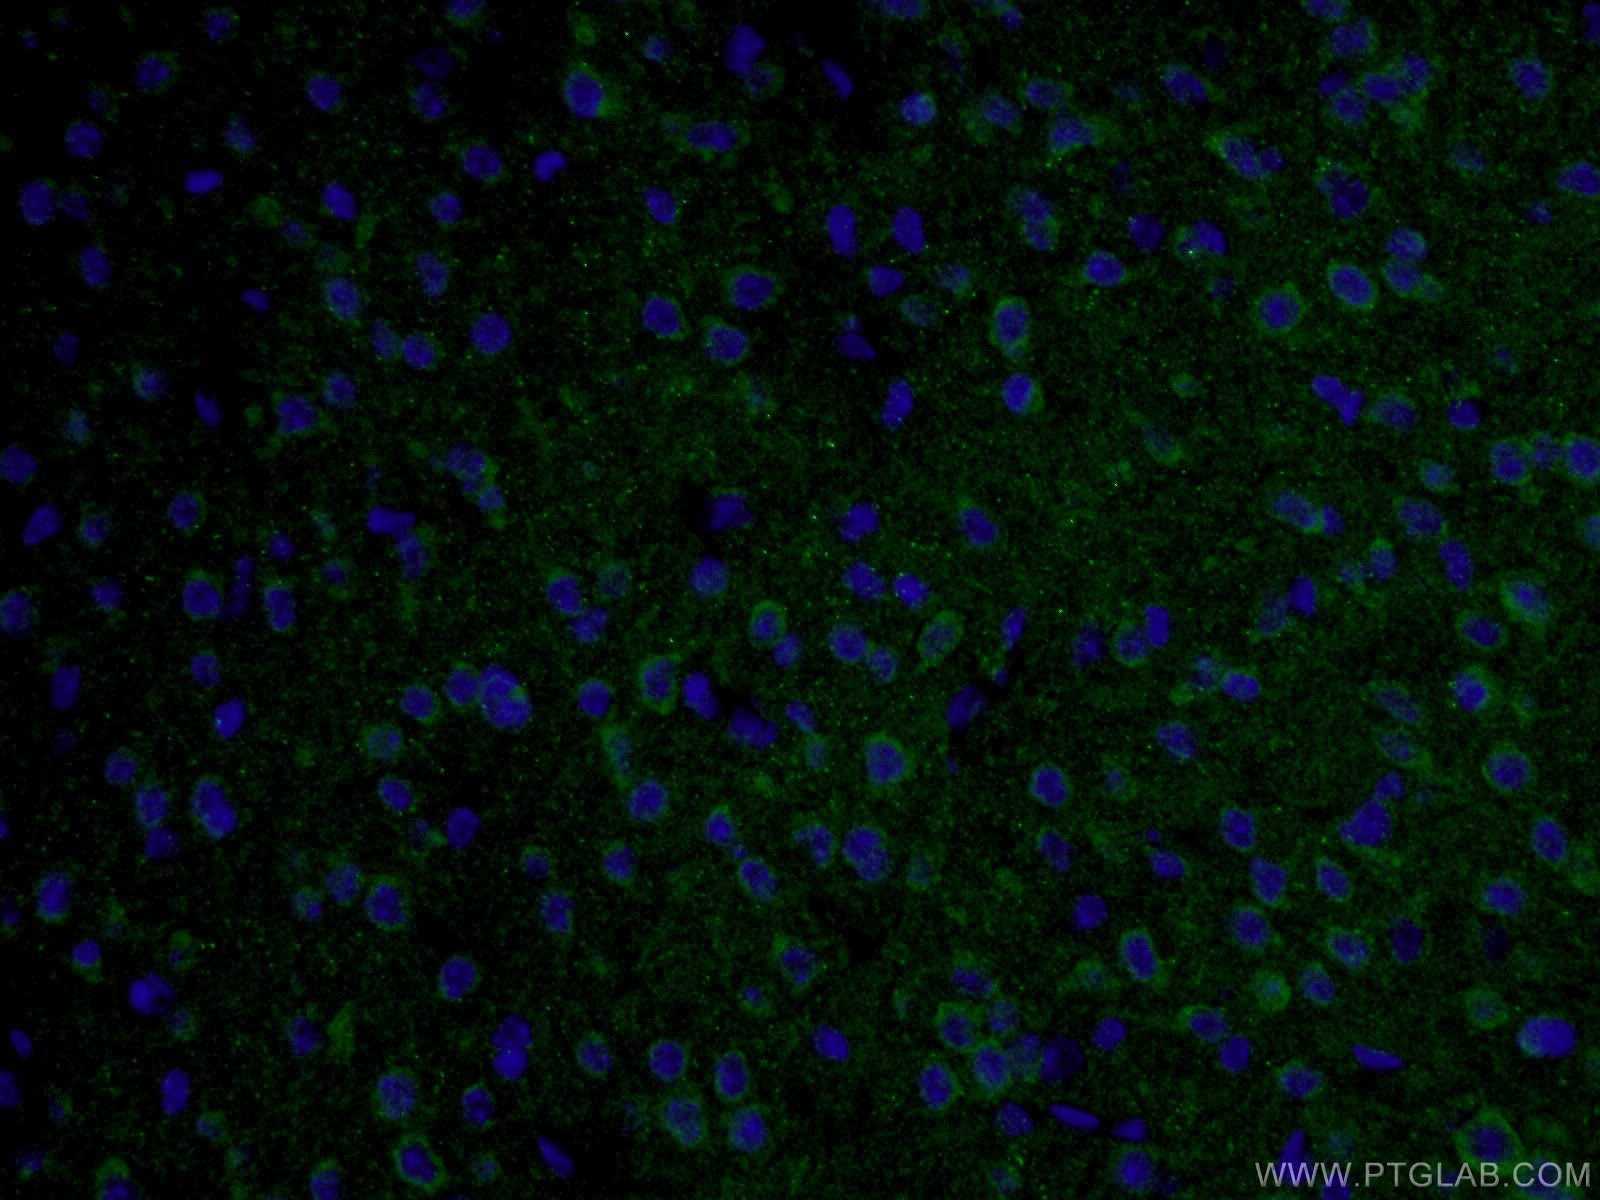 TAU Antibody IF mouse brain tissue 10274-1-AP